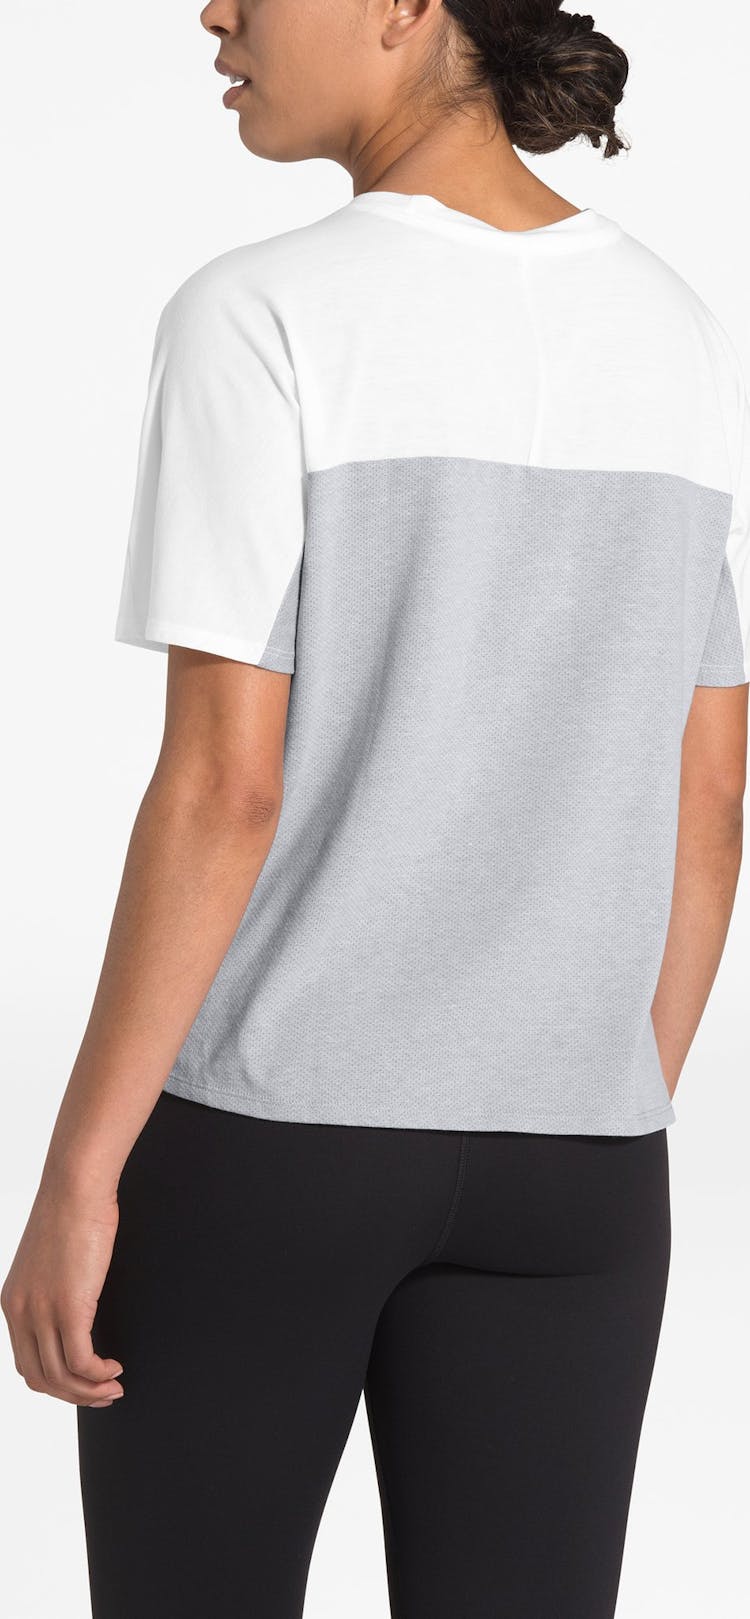 Numéro de l'image de la galerie de produits 3 pour le produit T-Shirt Workout Novelty - Femme